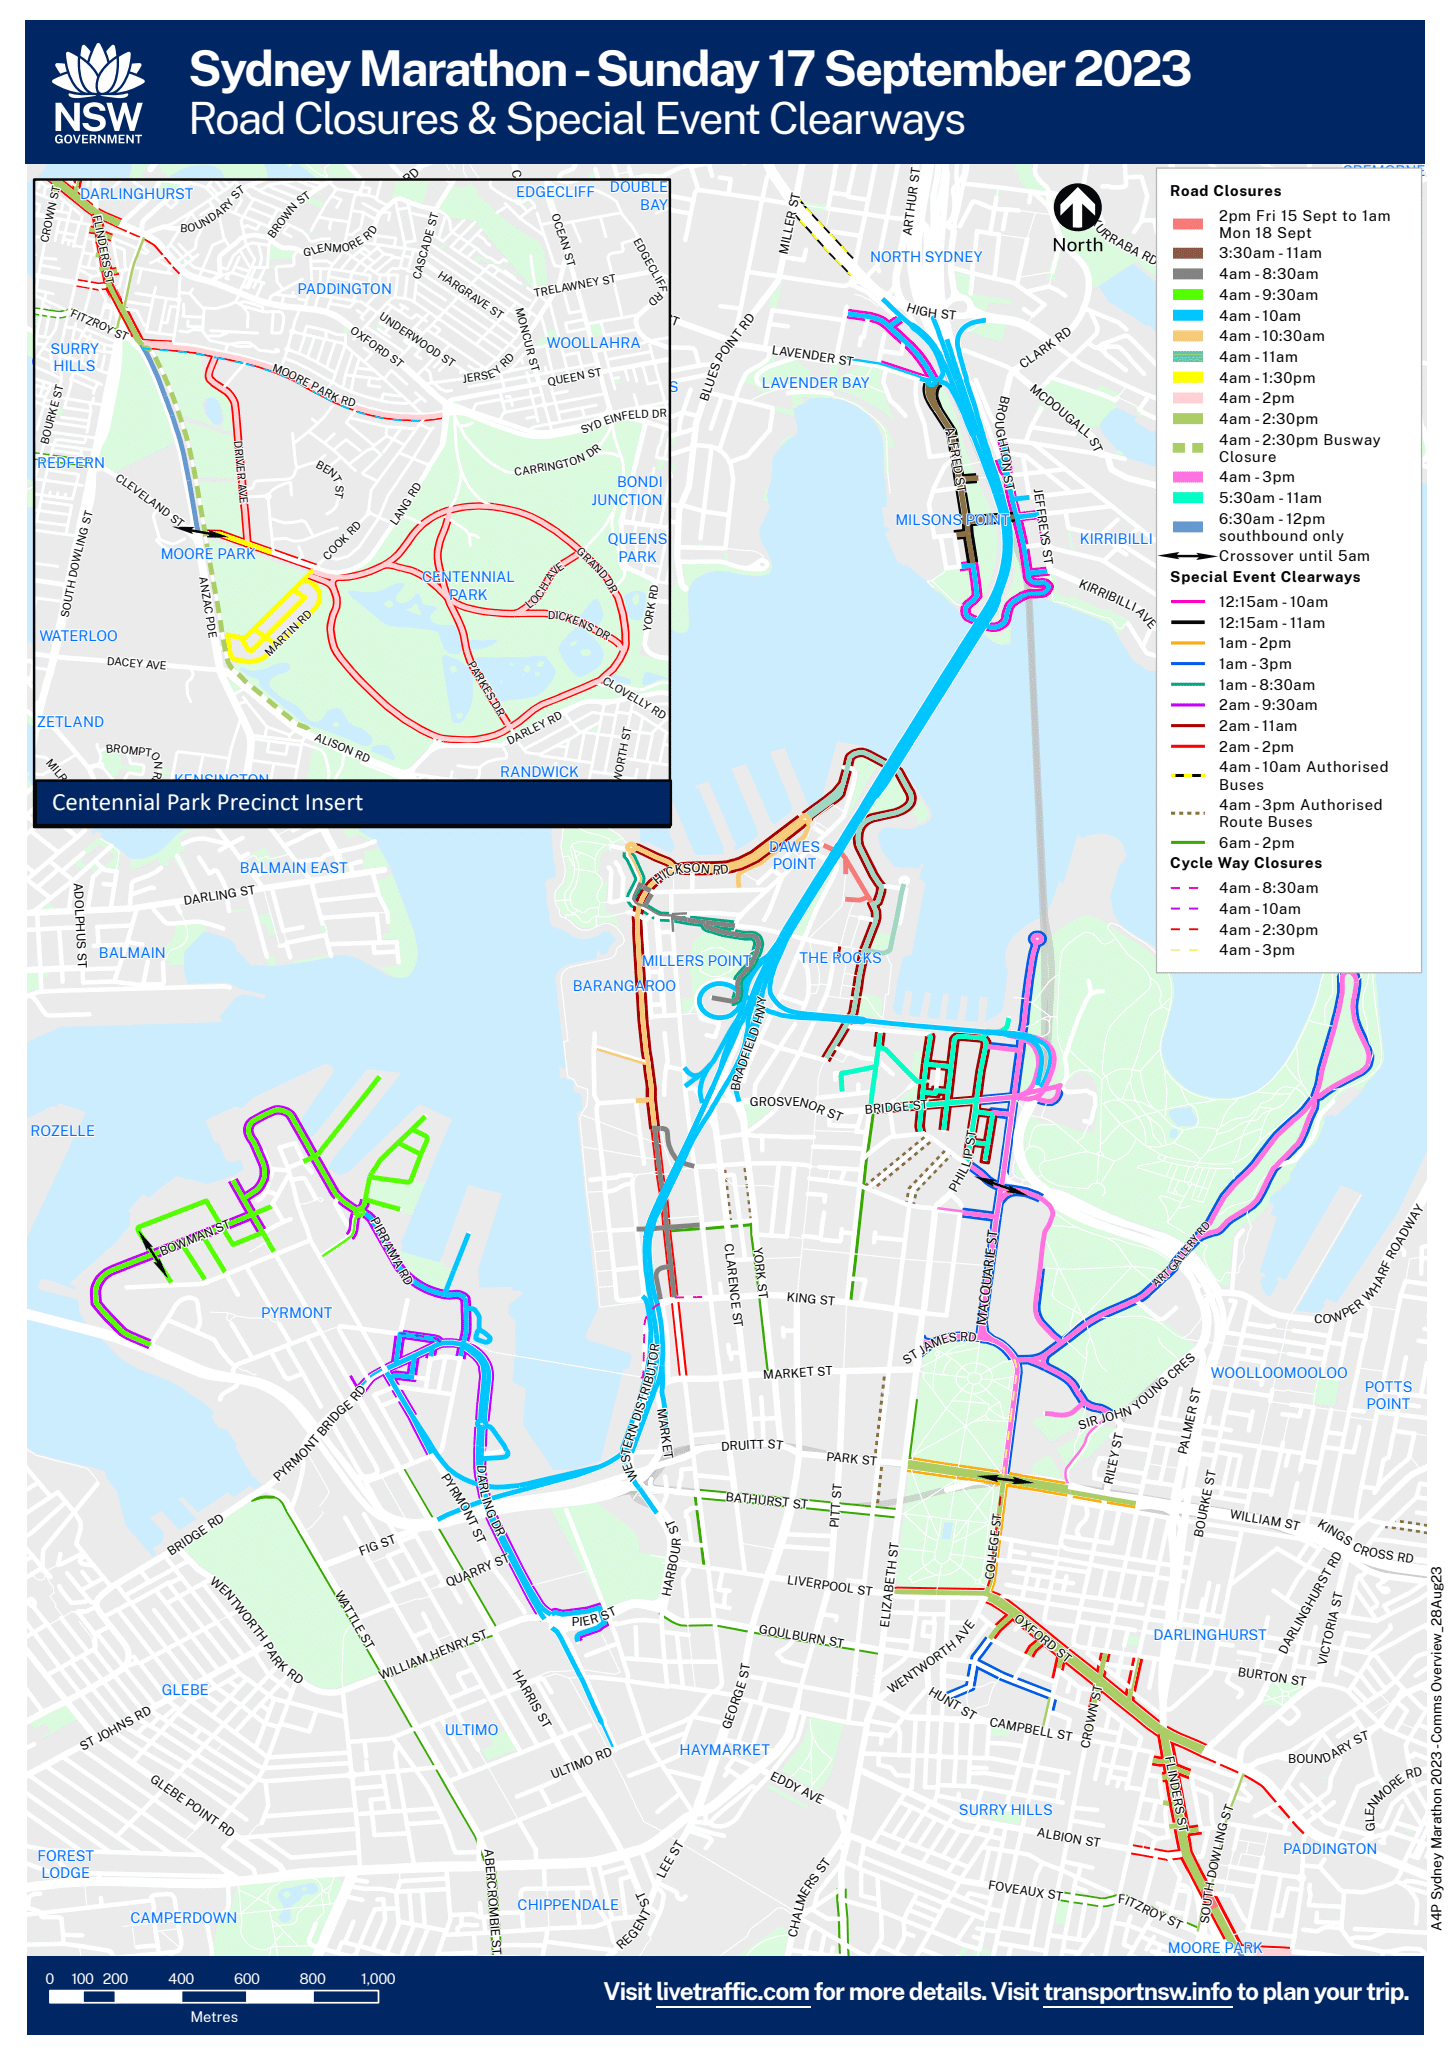 Sydney Marathon road closures